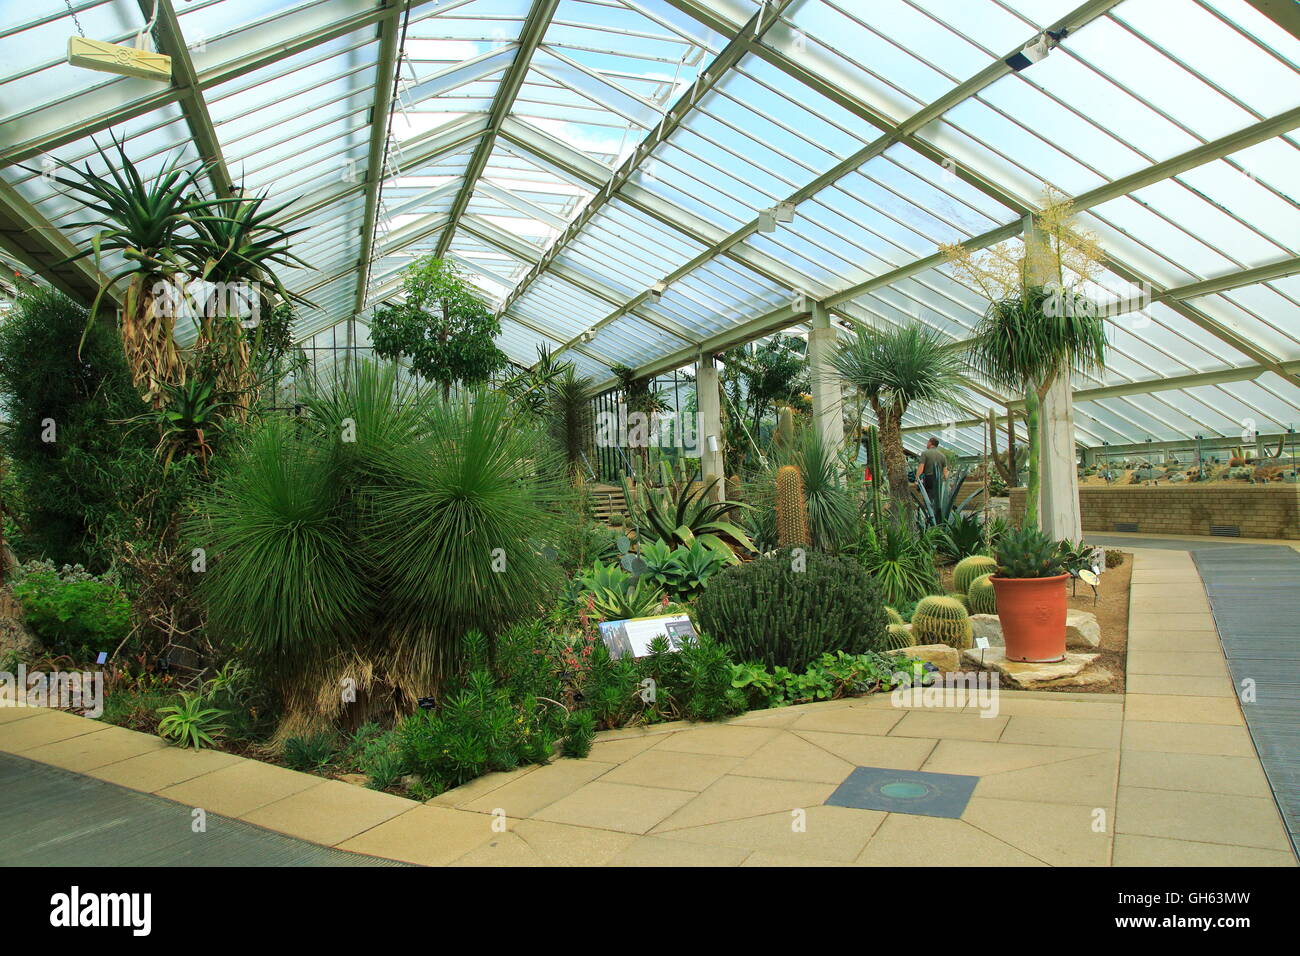 Plantes du désert à l'intérieur de l'hôtel Princess of Wales conservatory Royal Botanic Gardens, Kew, Londres, Angleterre, Royaume-Uni Banque D'Images